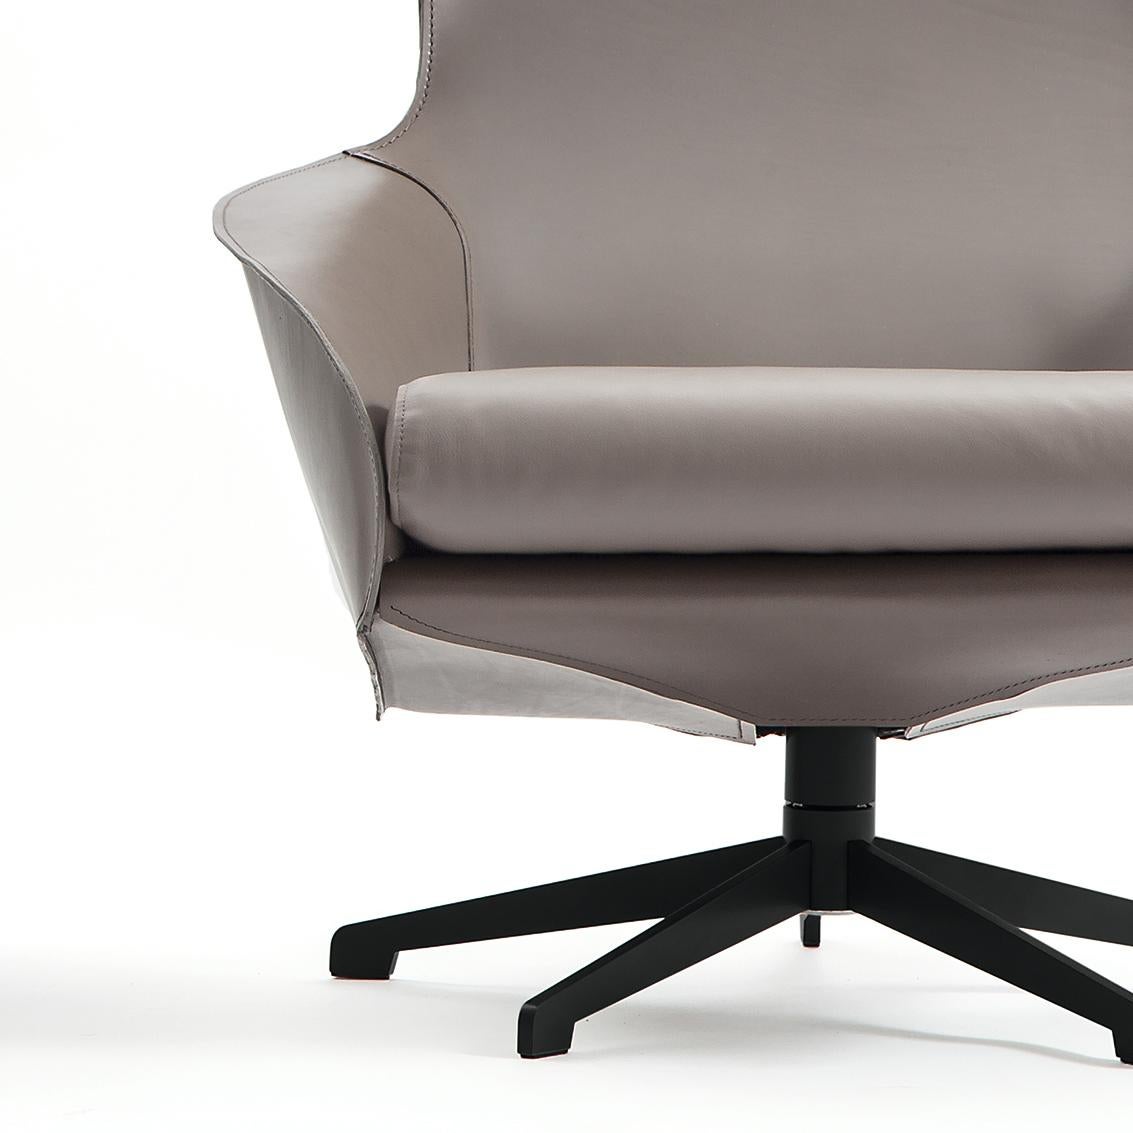 Chaise de salon Loounge conçue par Mario Bellini en 2015. Fabriqué par Cassina en Italie.

Élégante et accueillante, la chaise Cab Lounge est une version actualisée du concept de la chaise Cab. Rien de moins qu'un chef-d'œuvre de savoir-faire, le